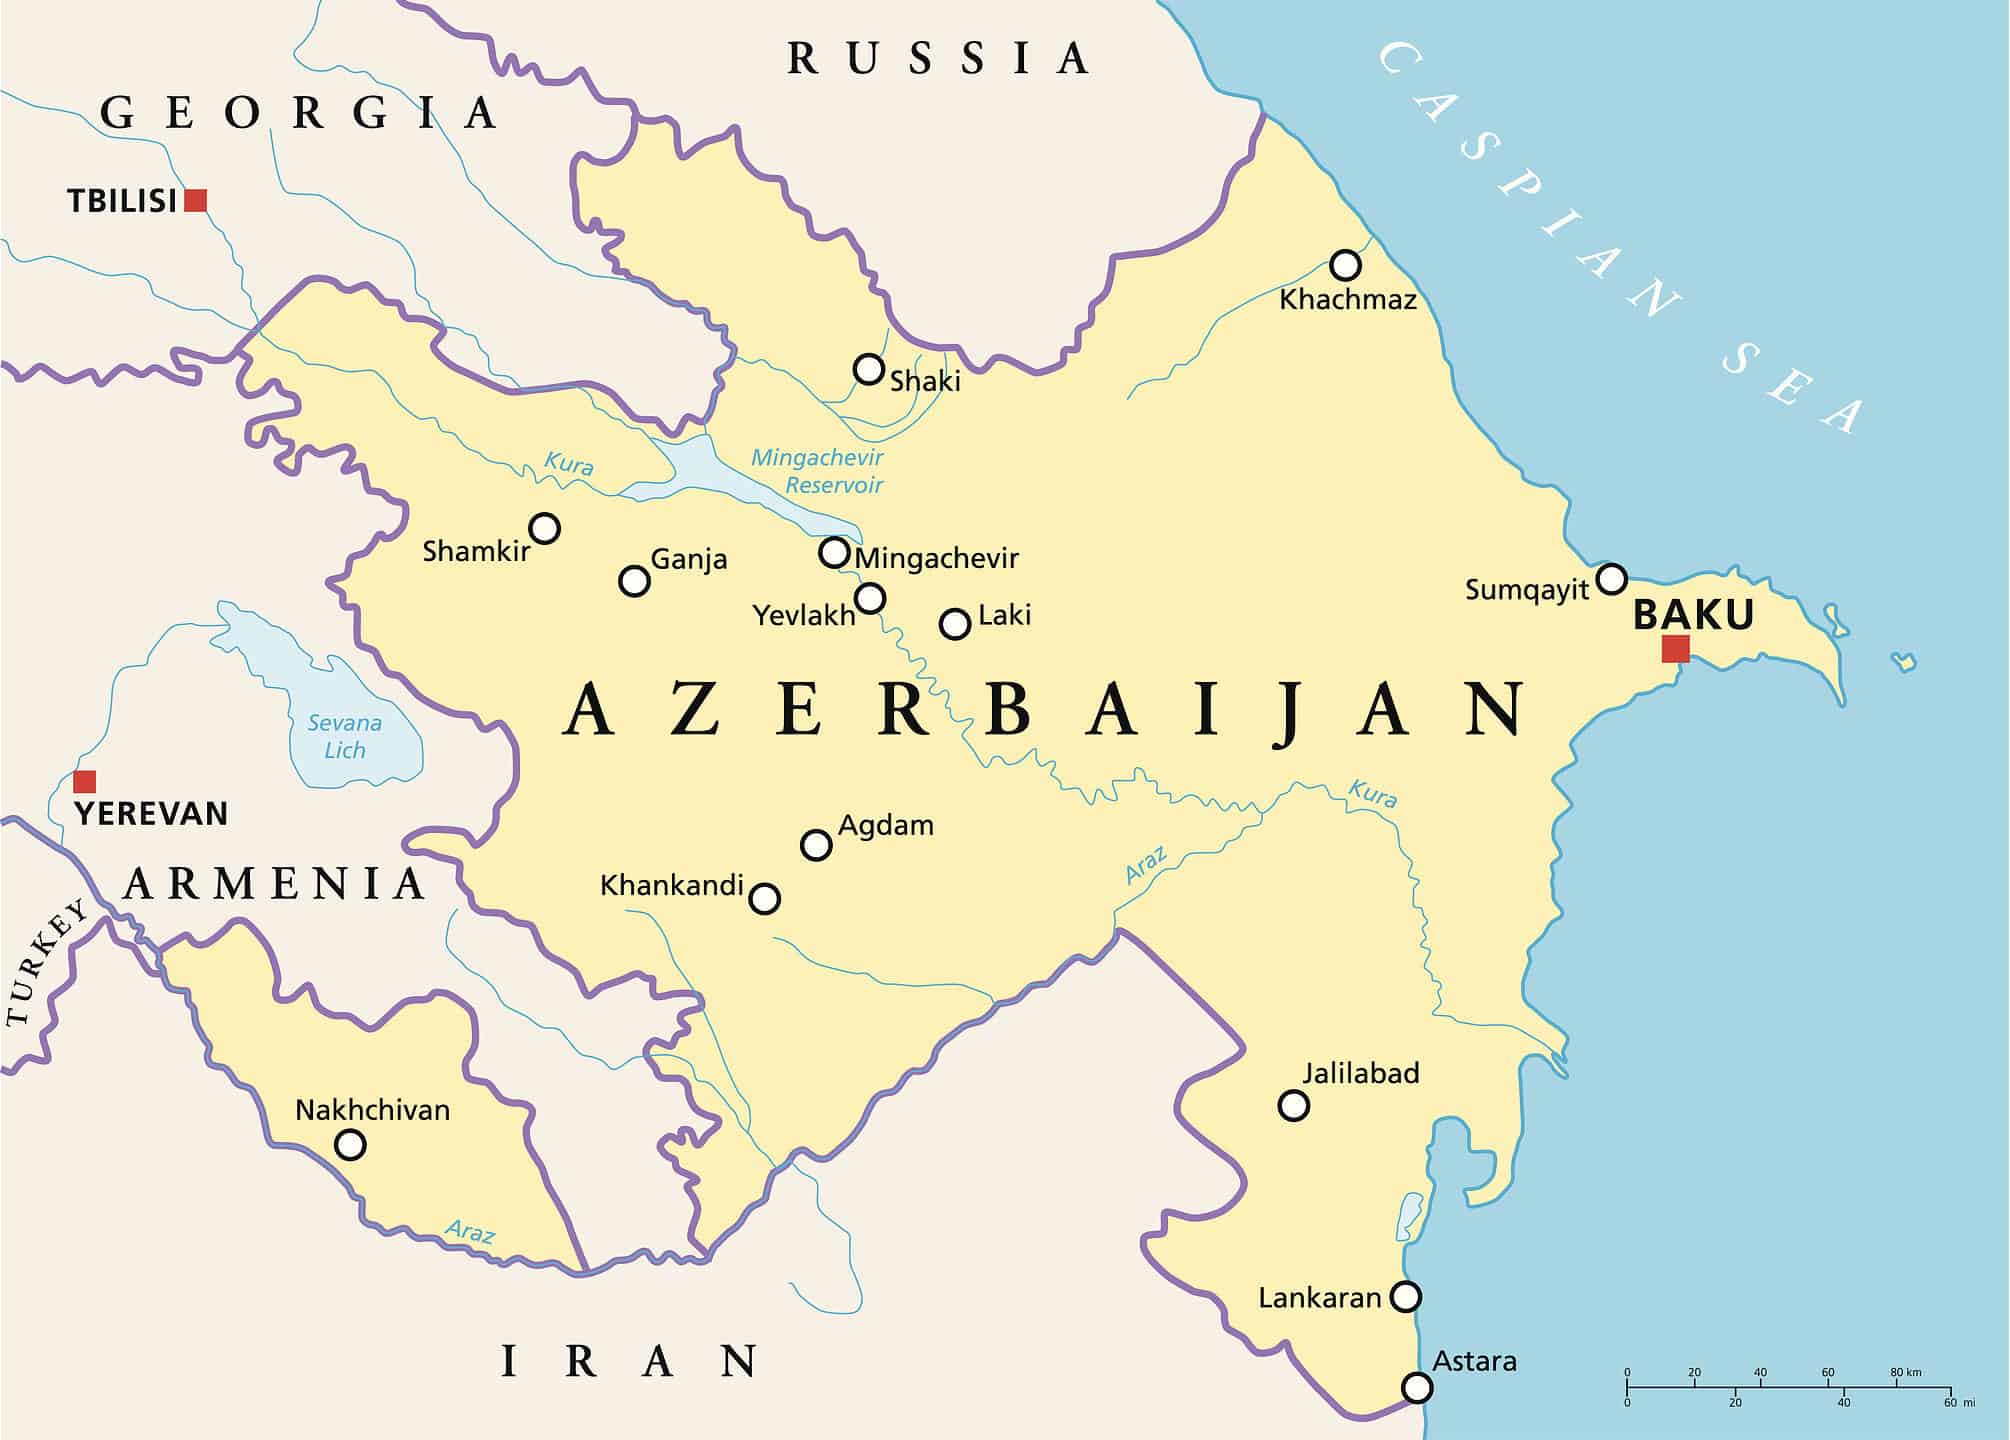 Mappa dell'Azerbaigian e delle aree circostanti.